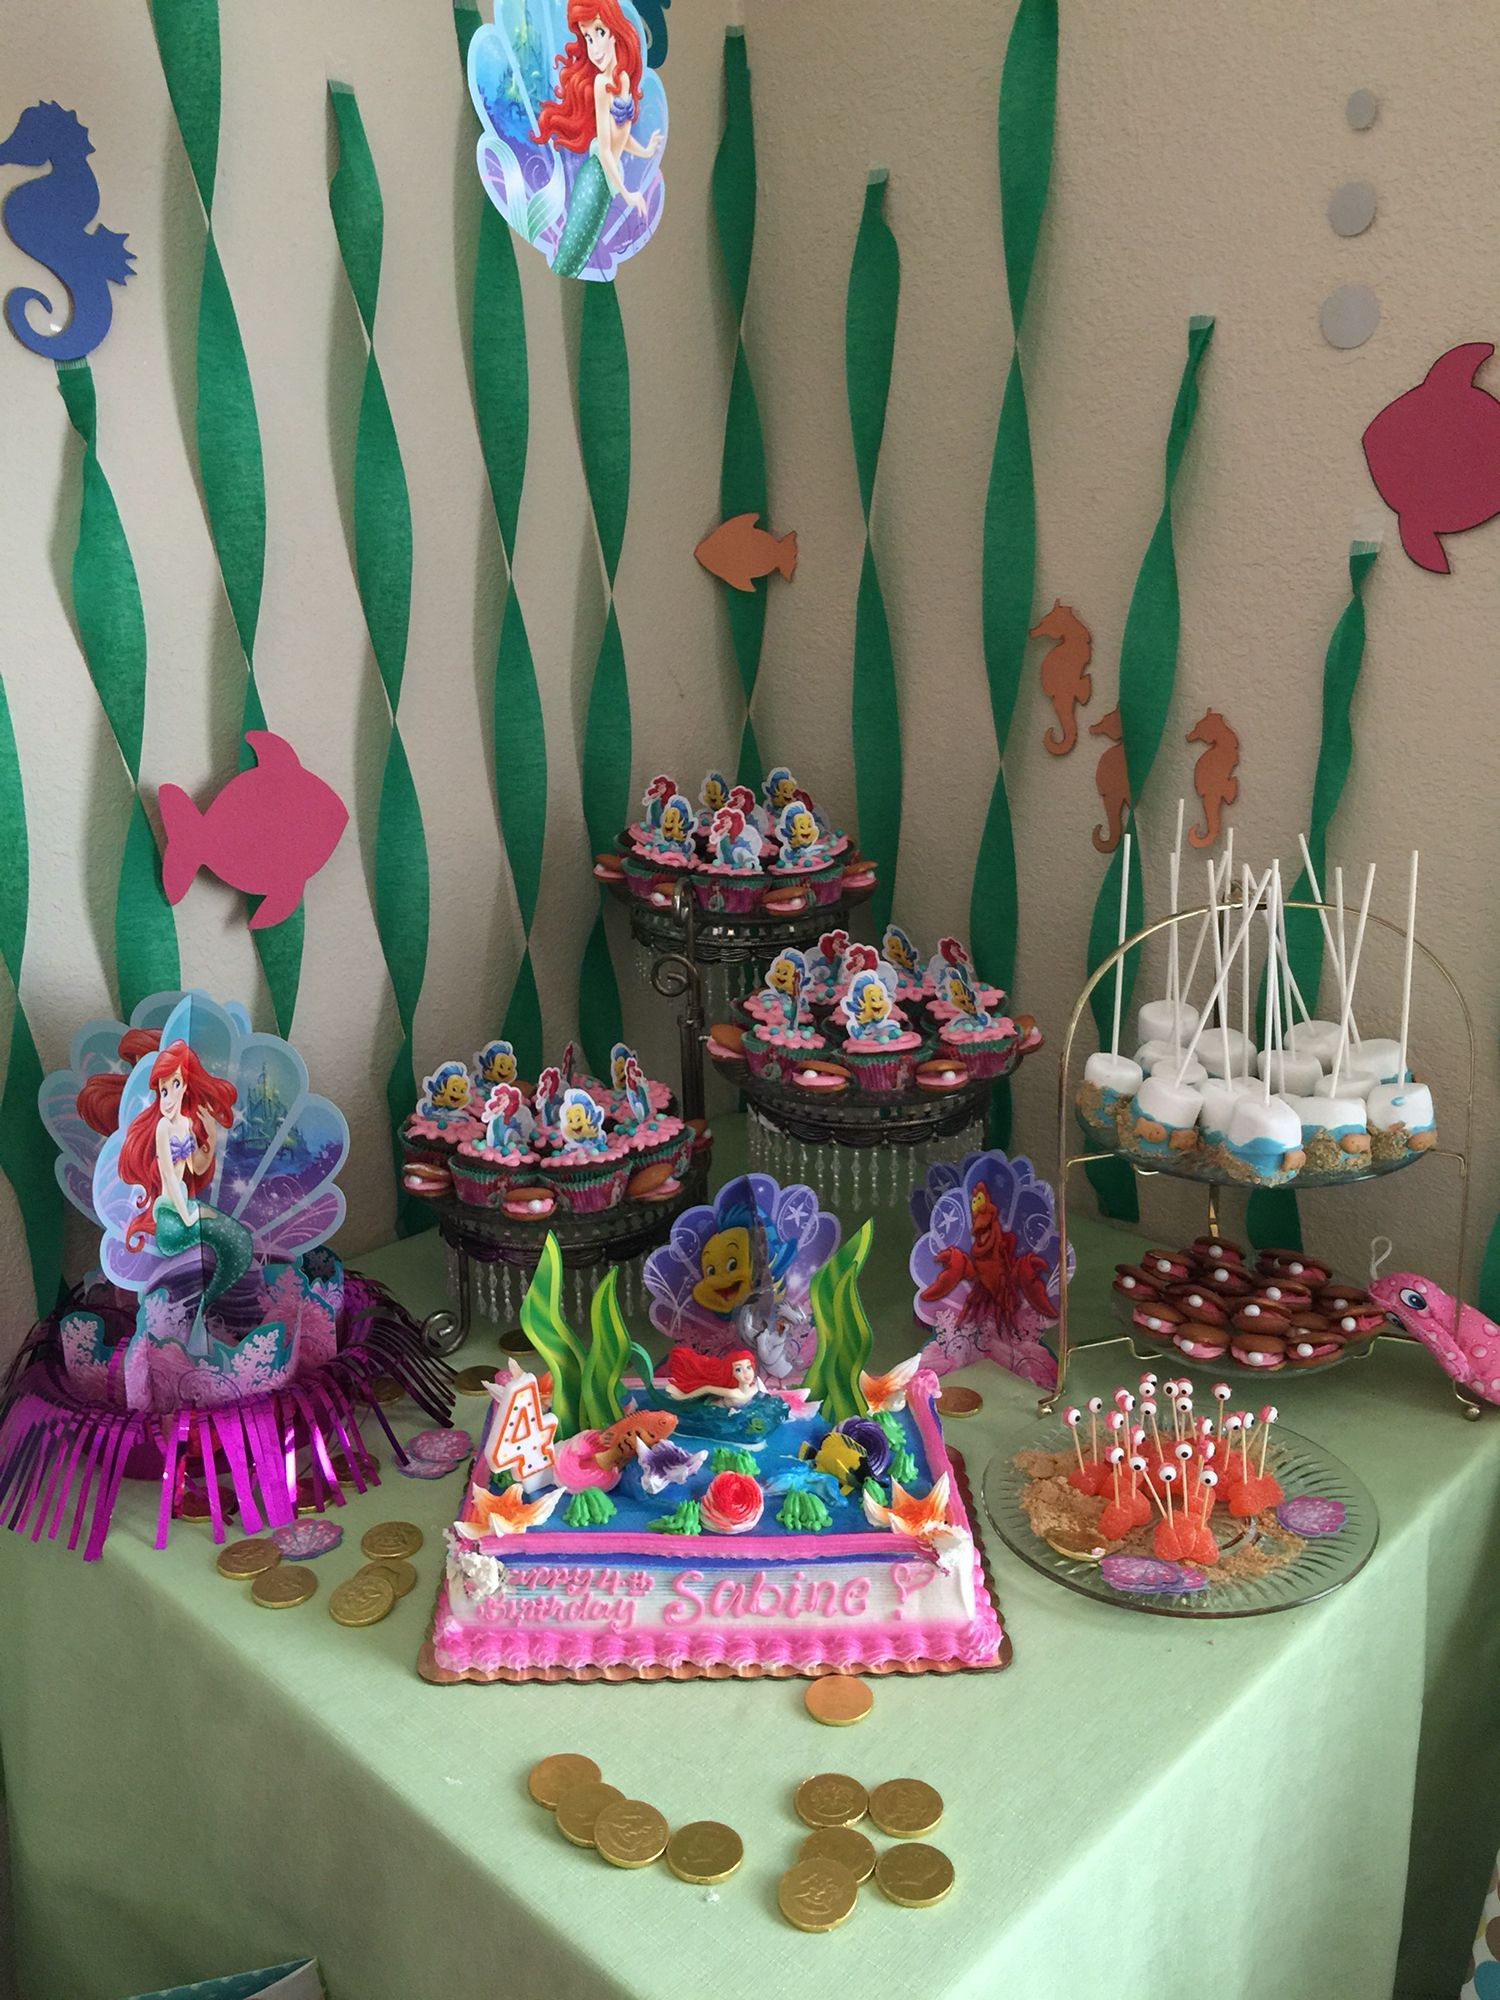 Little Mermaid Birthday Party Ideas Pinterest
 Little mermaid theme kids birthday party